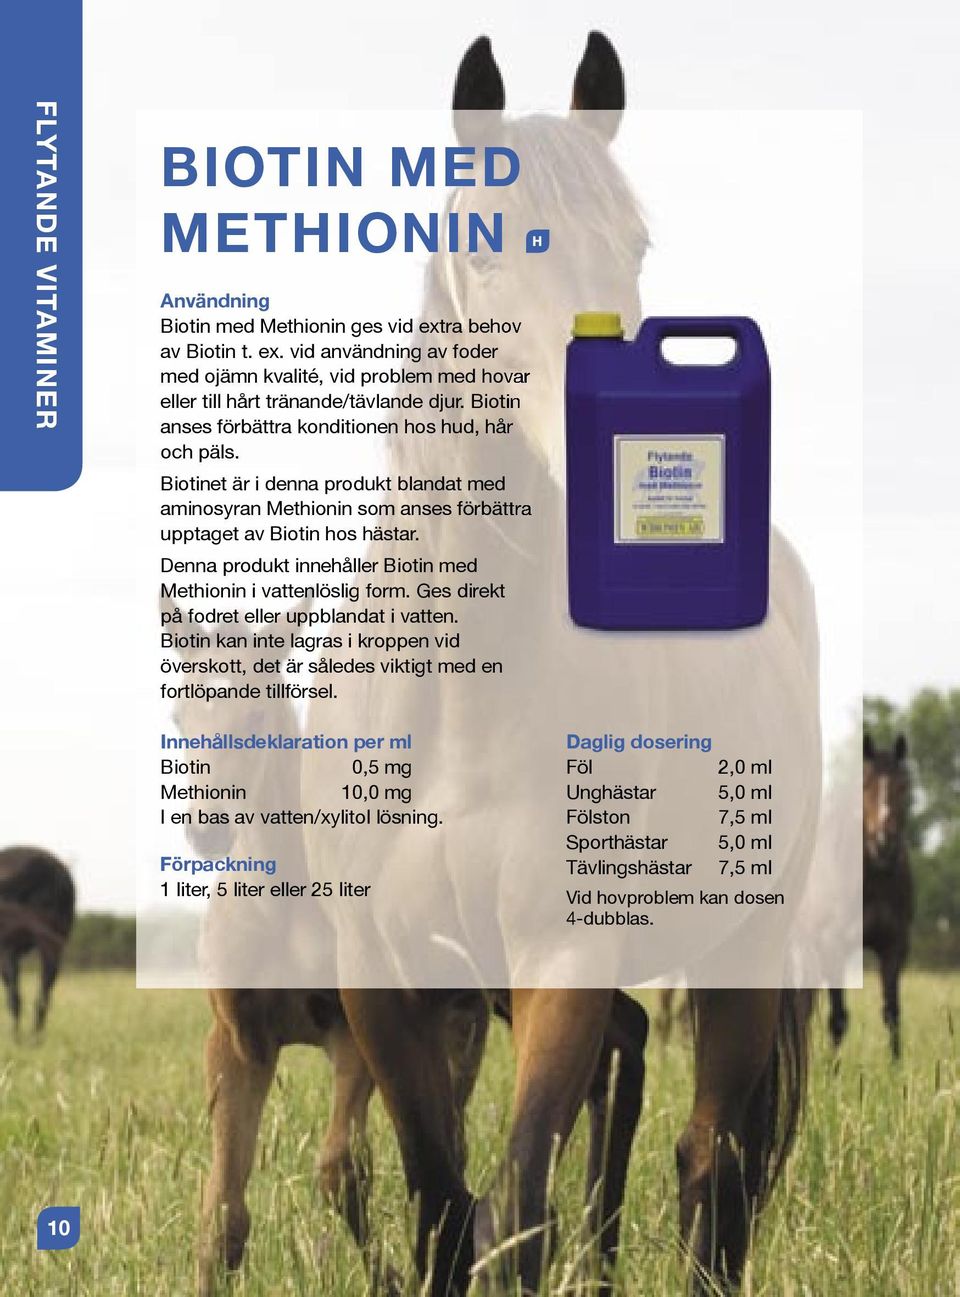 Denna produkt innehåller Biotin med Methionin i vattenlöslig form. Ges direkt på fodret eller uppblandat i vatten.